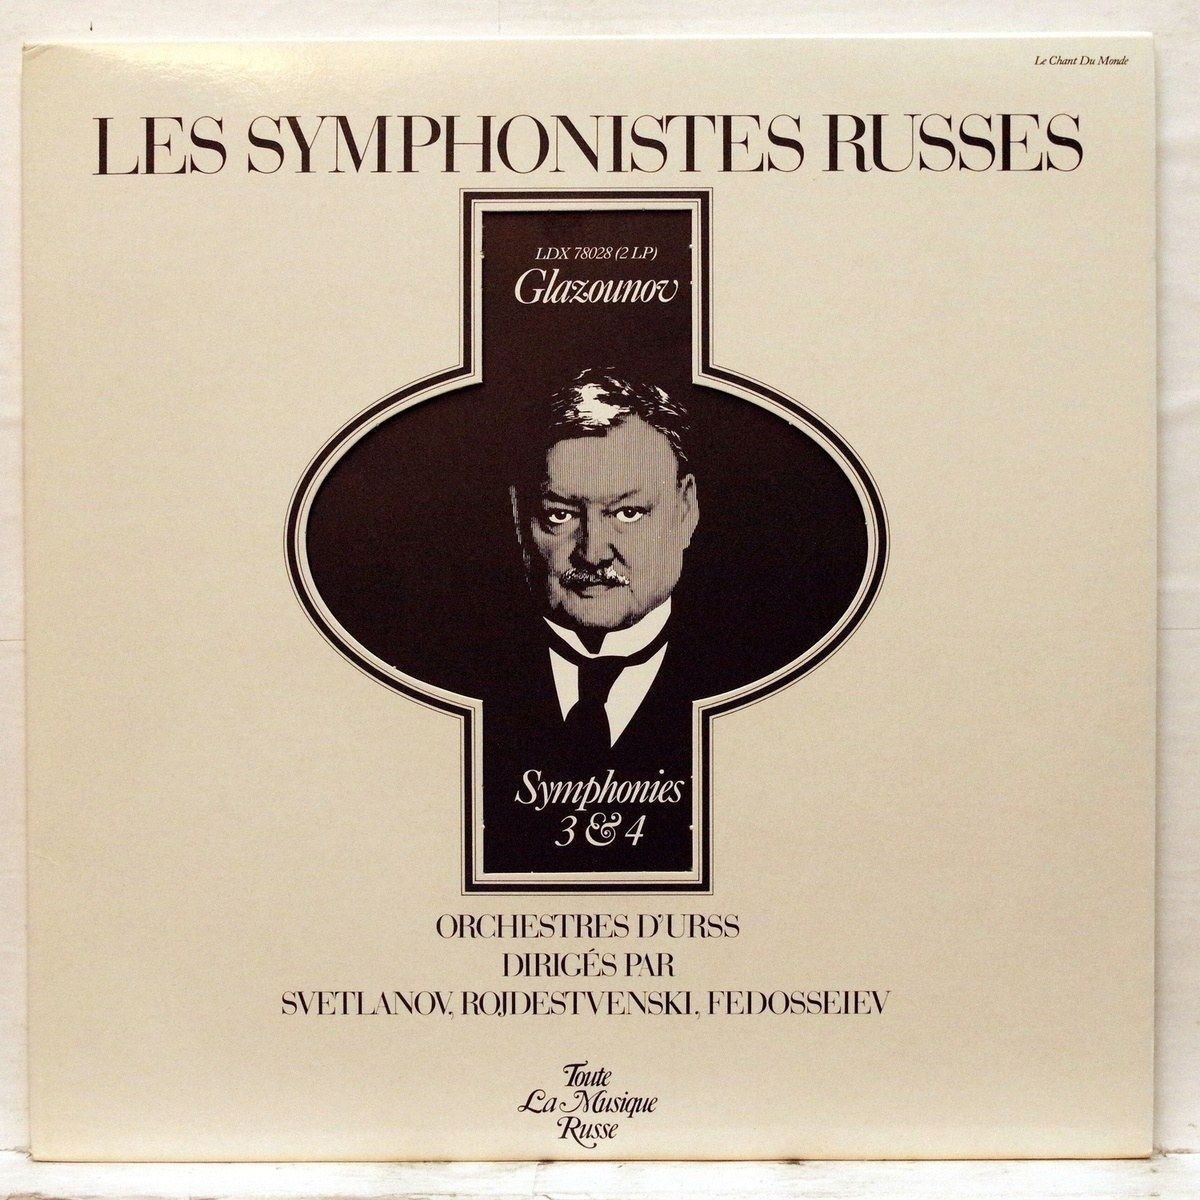 Les Symphonistes Russes. Glazounov. Symphonies 3 & 4 (Le Chant Du Monde ‎LDX 78028, 2LP)